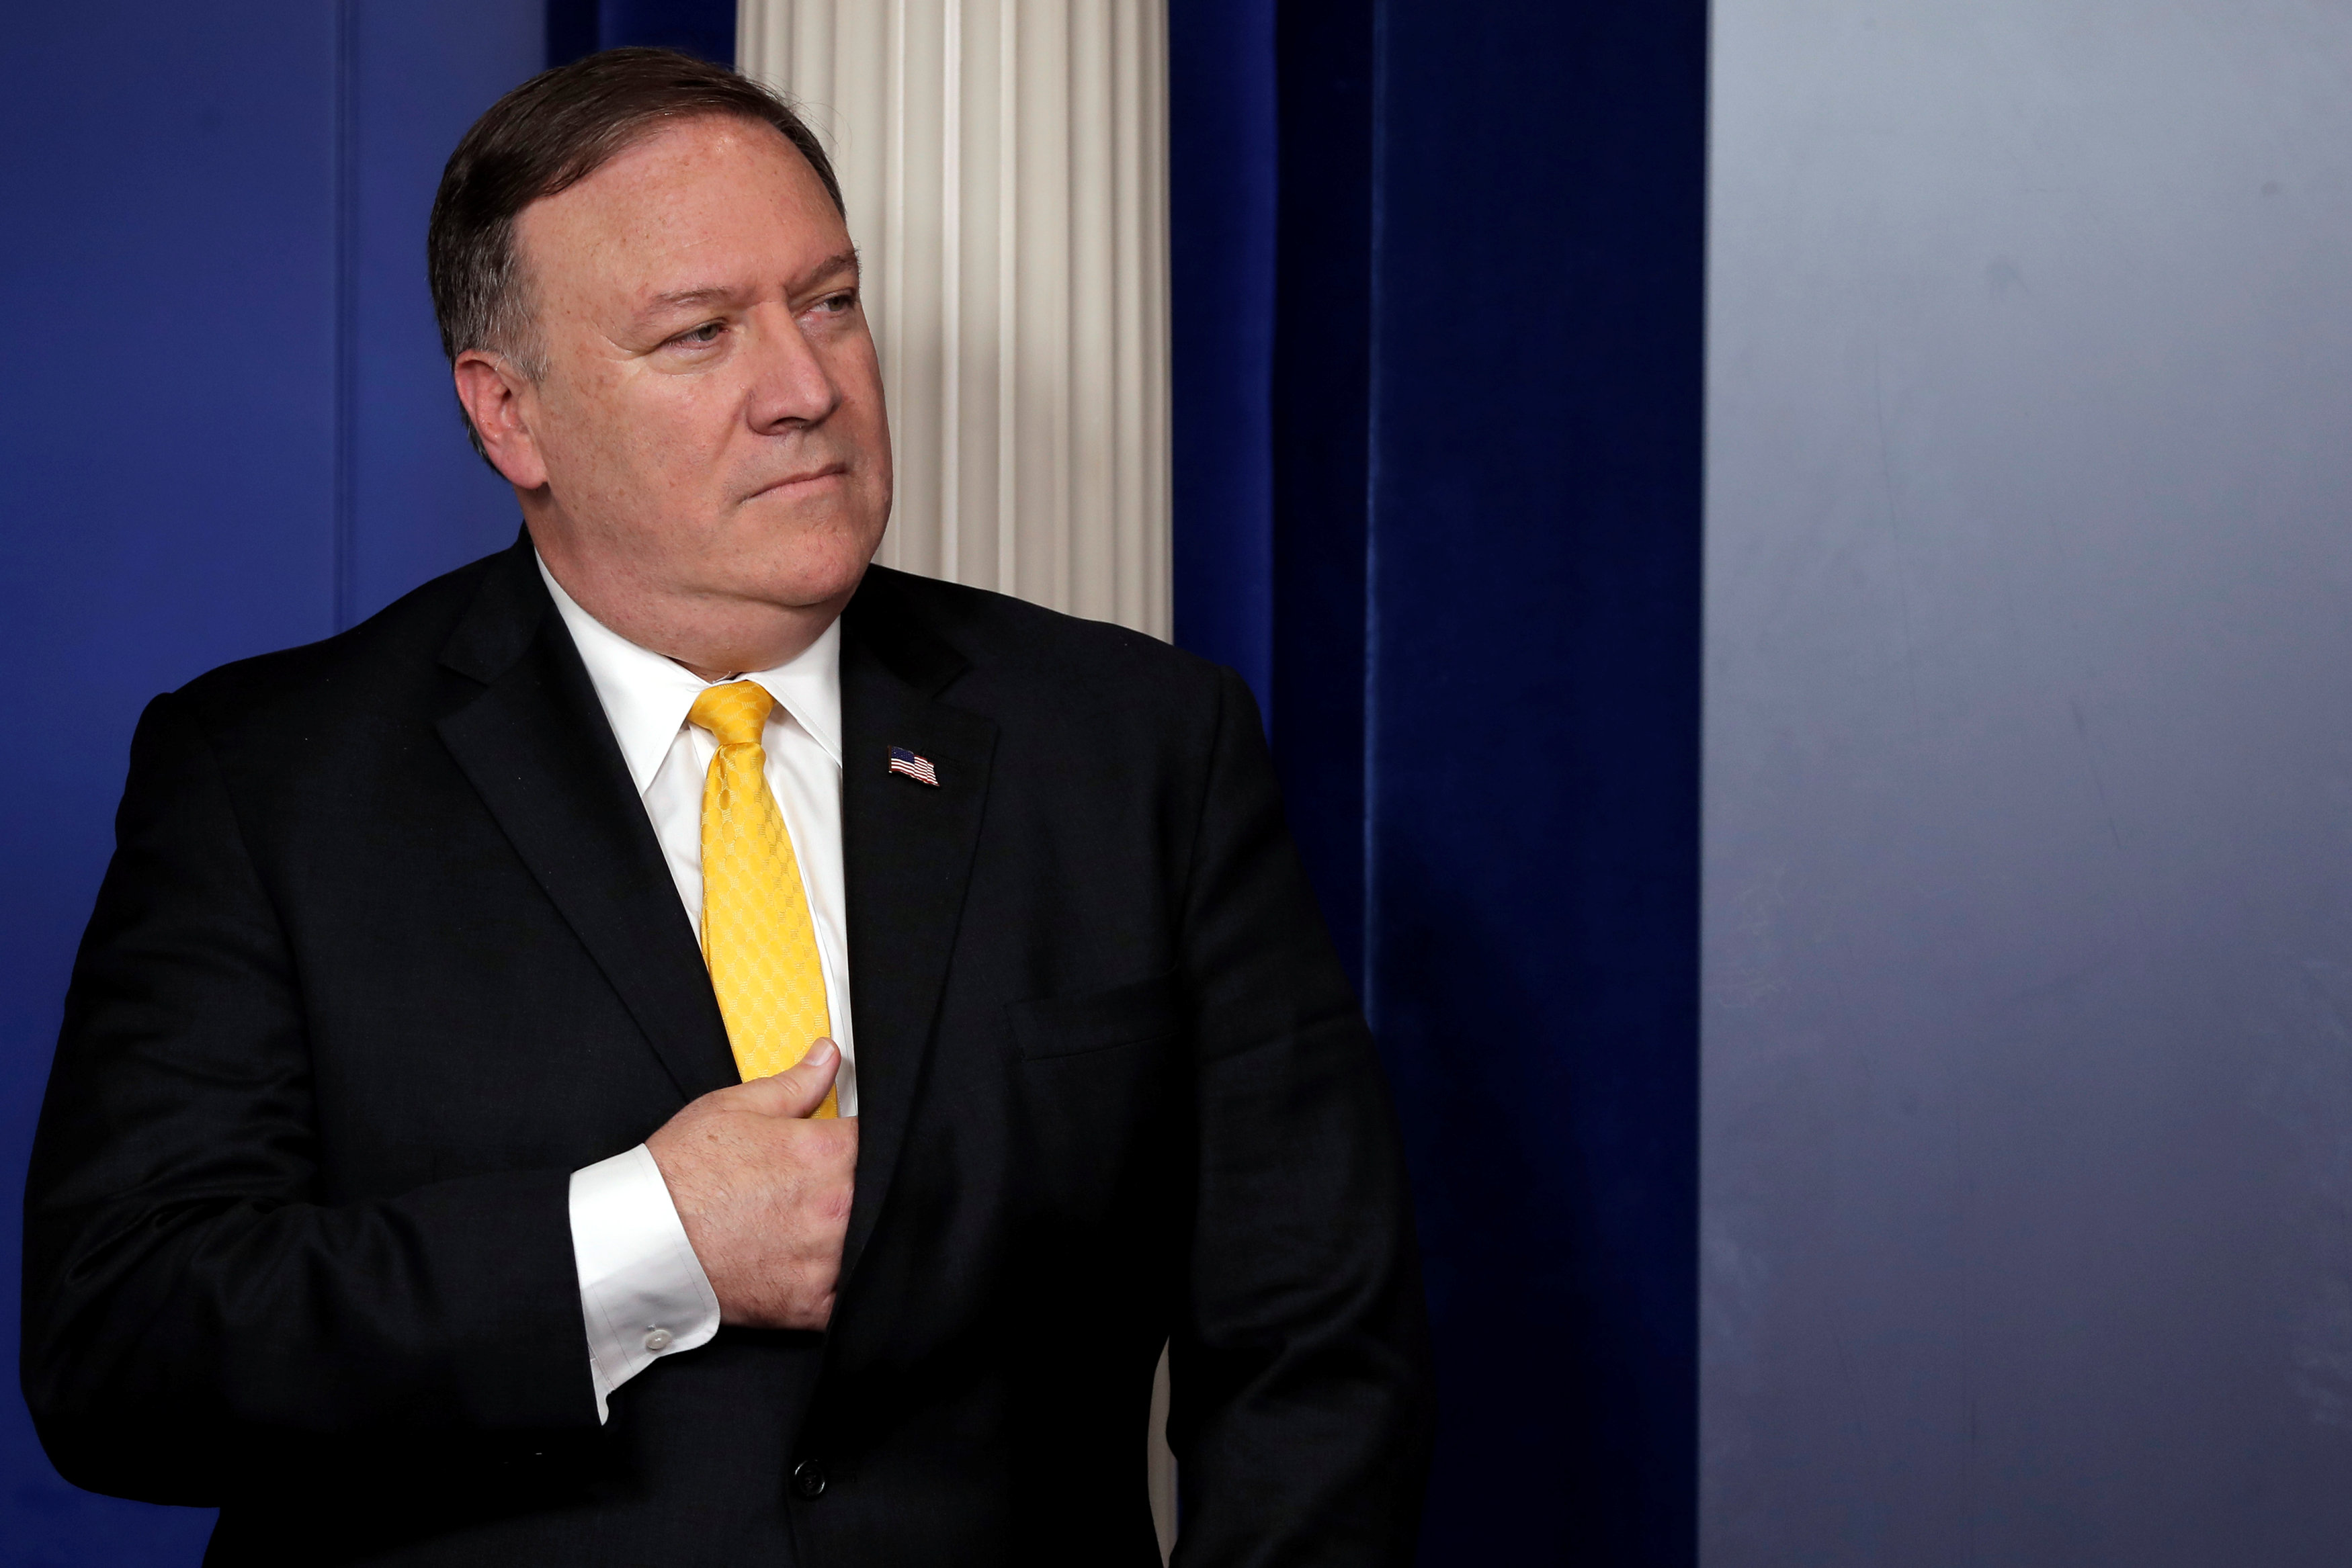 EEUU hará cumplir las nuevas sanciones contra Irán, afirma Pompeo